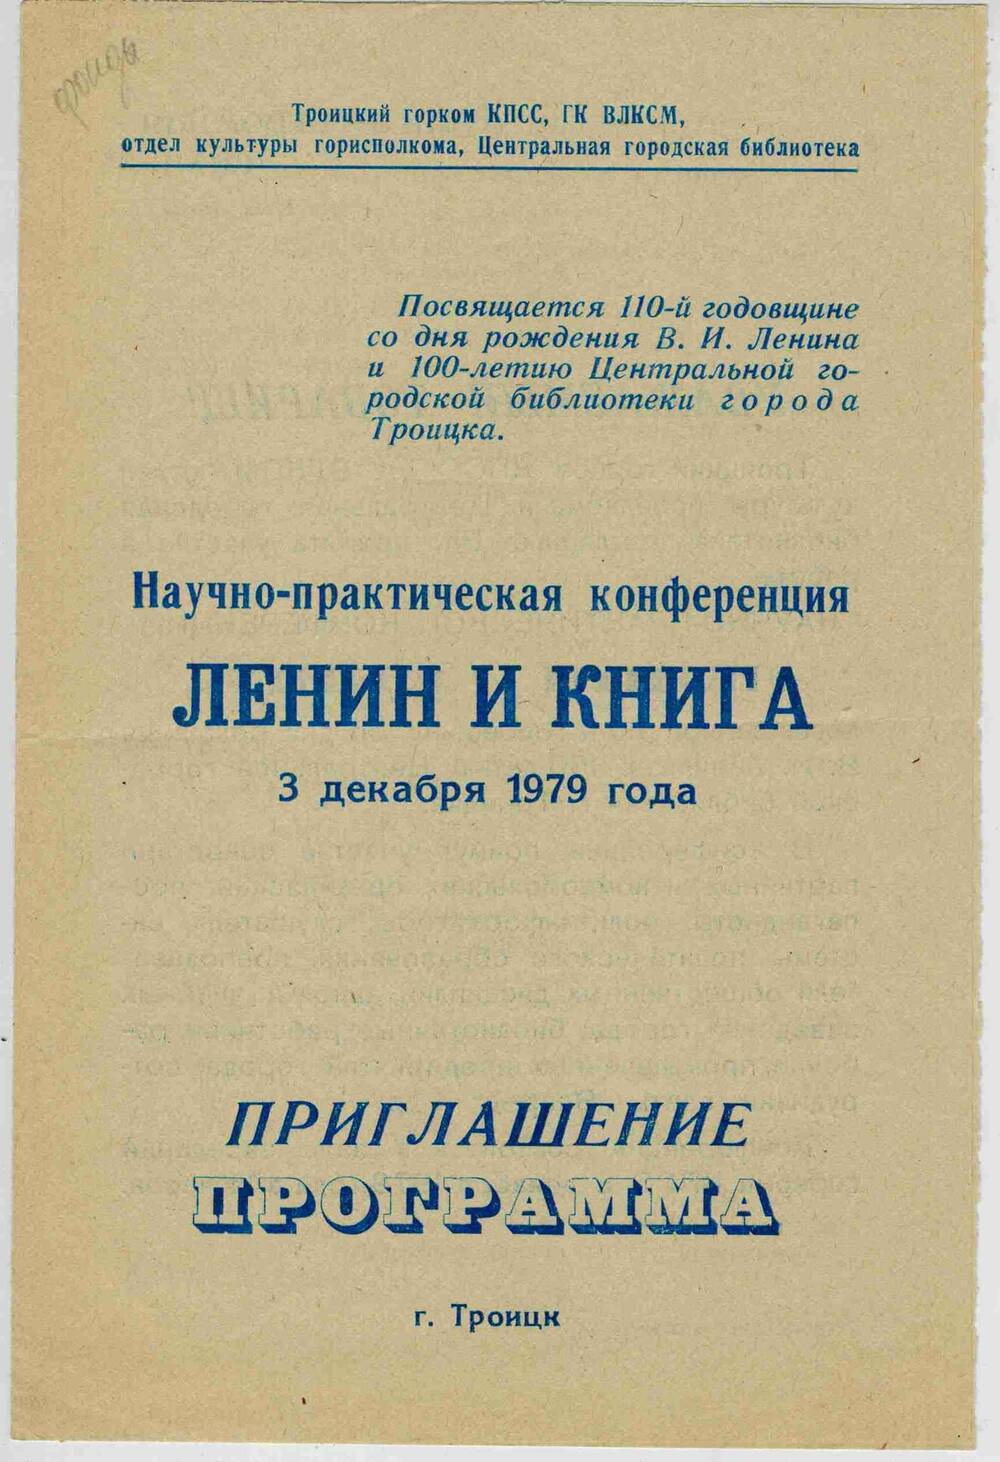 Программа научно-практической конференции Ленин и книга 3 декабря 1979 года.